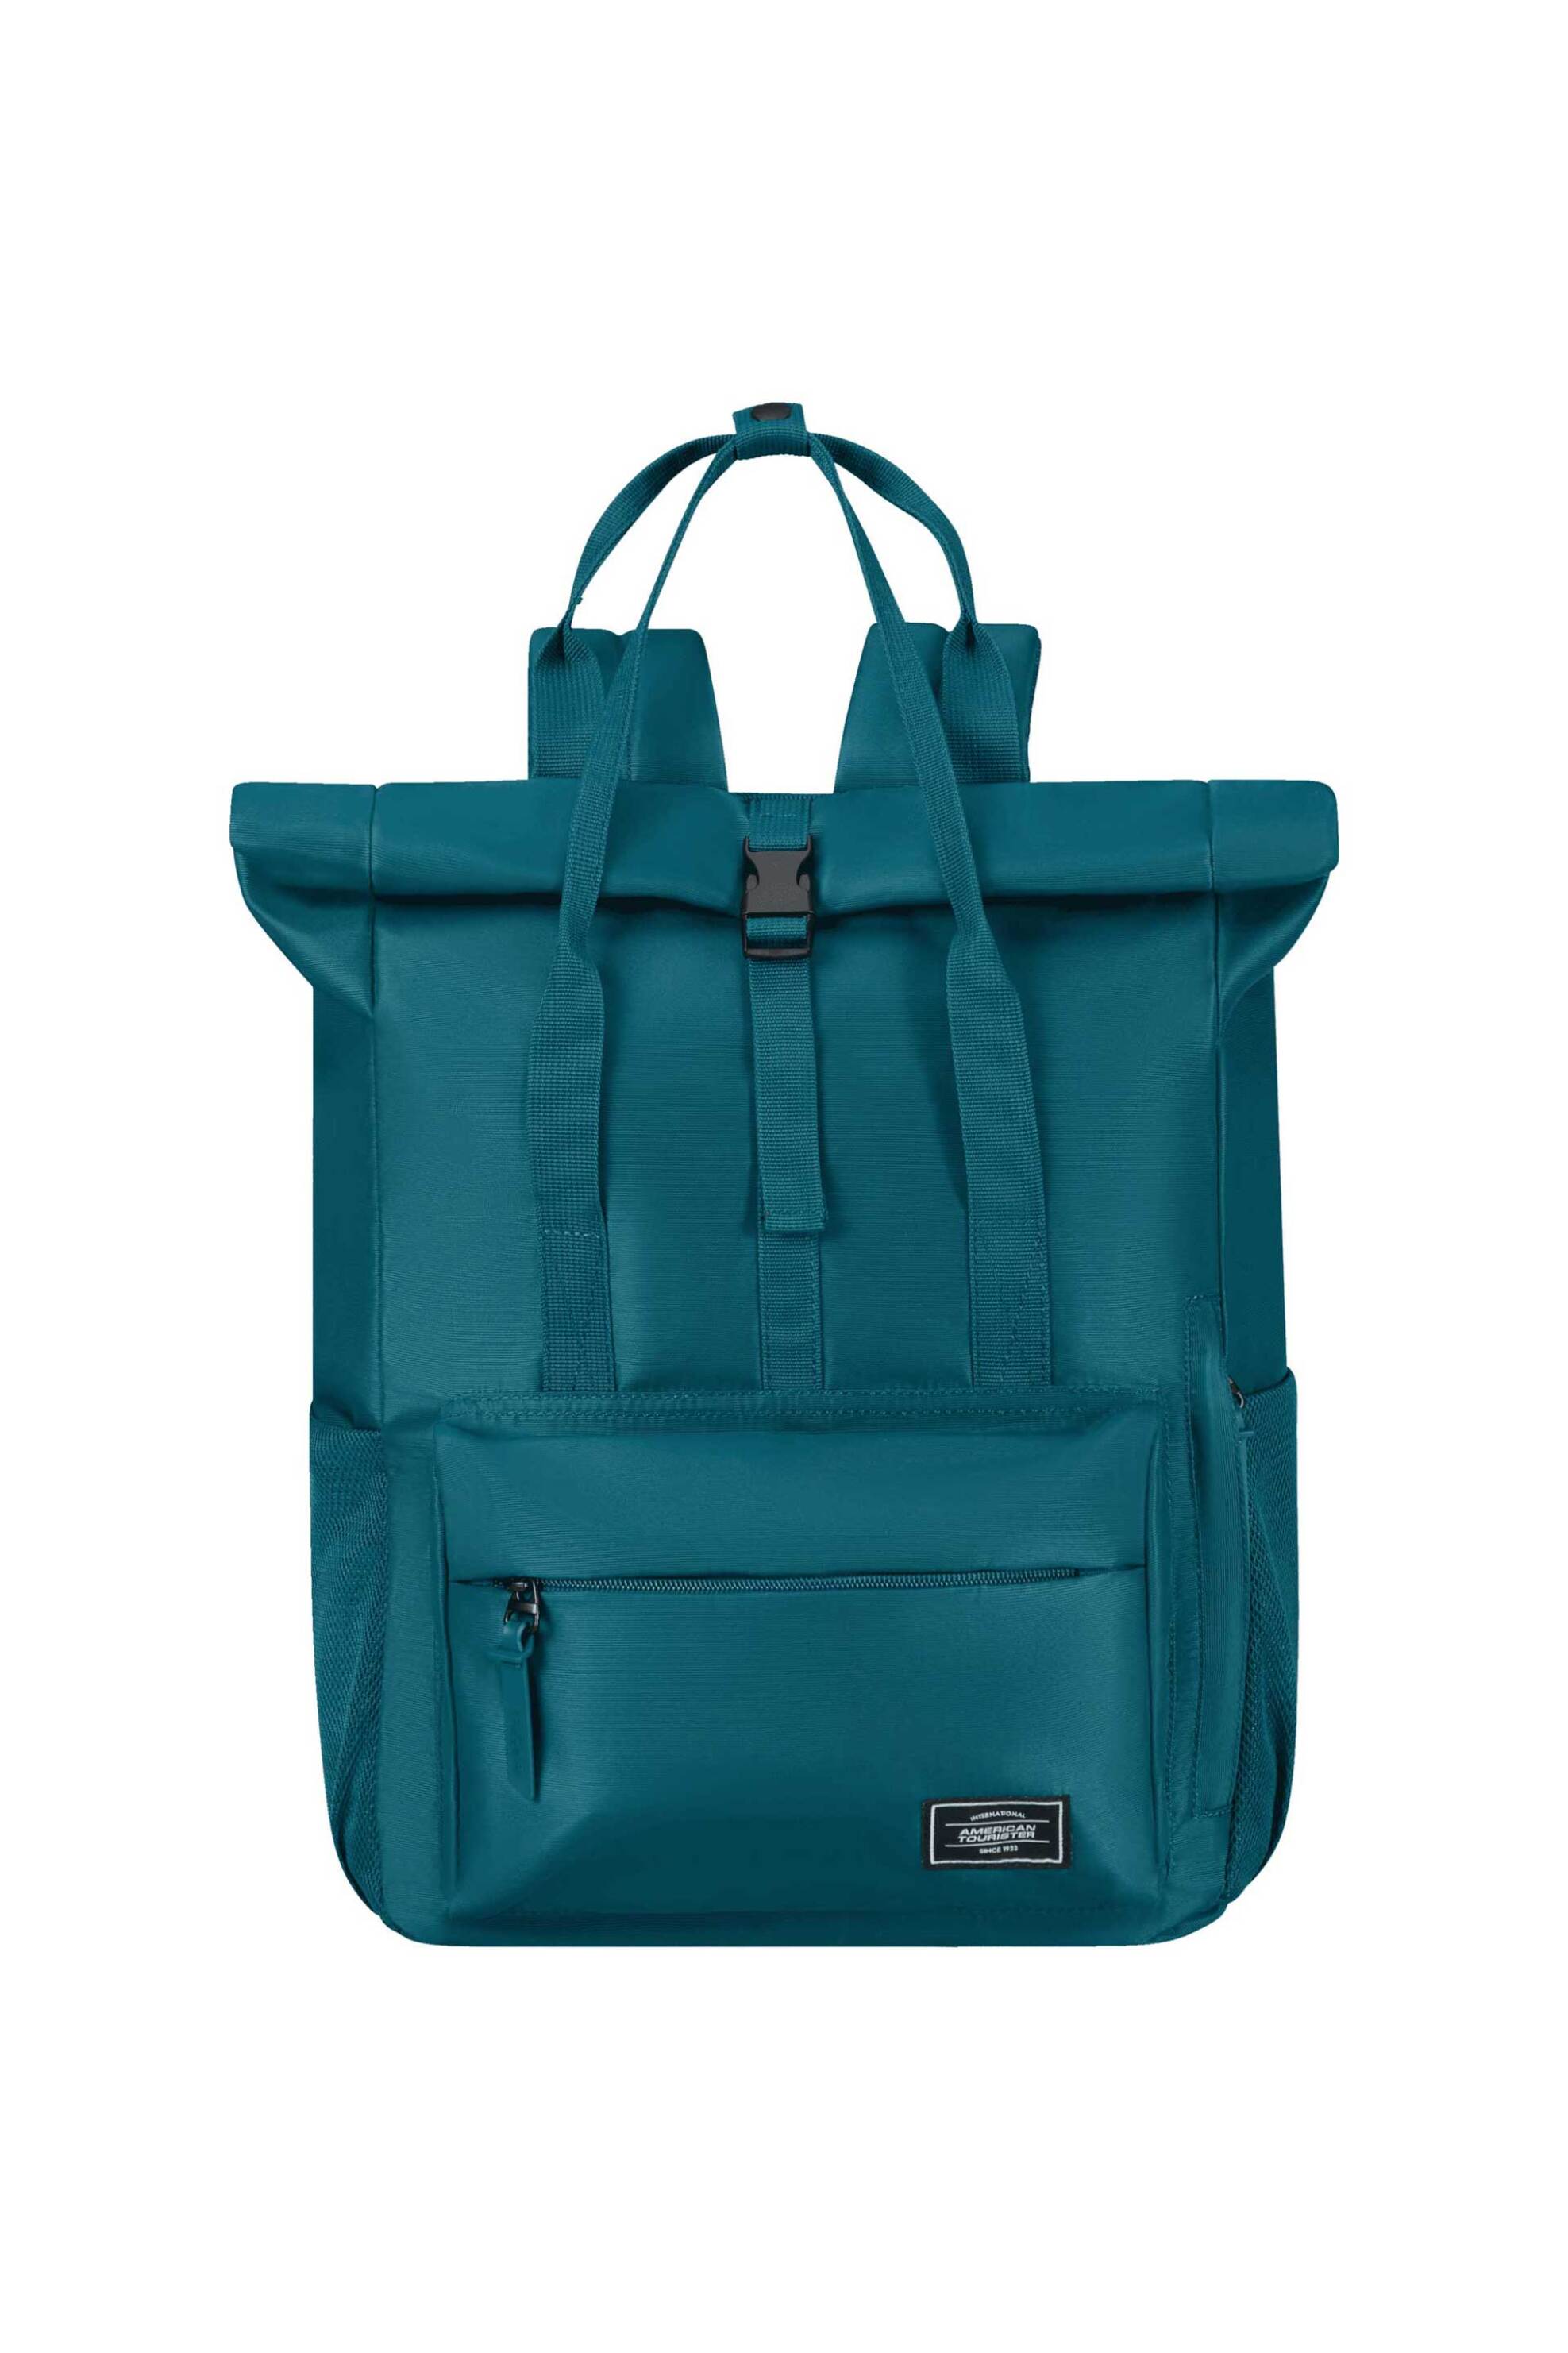 Ανδρική Μόδα > Ανδρικές Τσάντες > Ανδρικά Σακίδια & Backpacks American Tourister unisex backpack μονόχρωμο με θήκη laptop 15,6'' "Urban Groove" 42,5 x 30,5 x 21 cm - 147671SM Πετρόλ